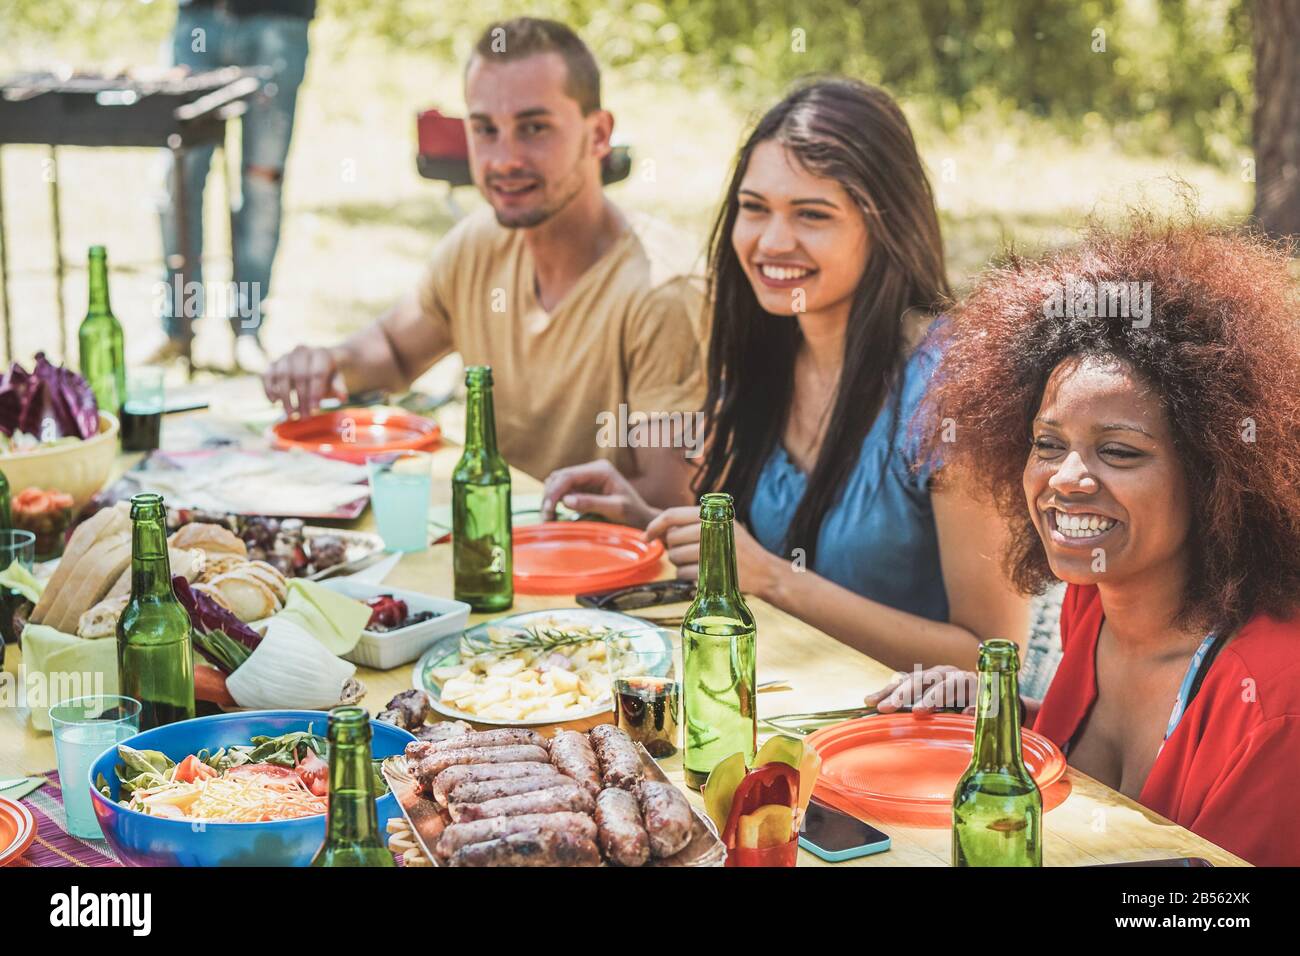 Gruppe glücklicher Leute, die am picknick-grillessen in der Natur lachen - Junge Freunde haben Spaß am Grillen Fleisch essen und Bier trinken im Freien - Konzentrieren Sie Sich auf r Stockfoto